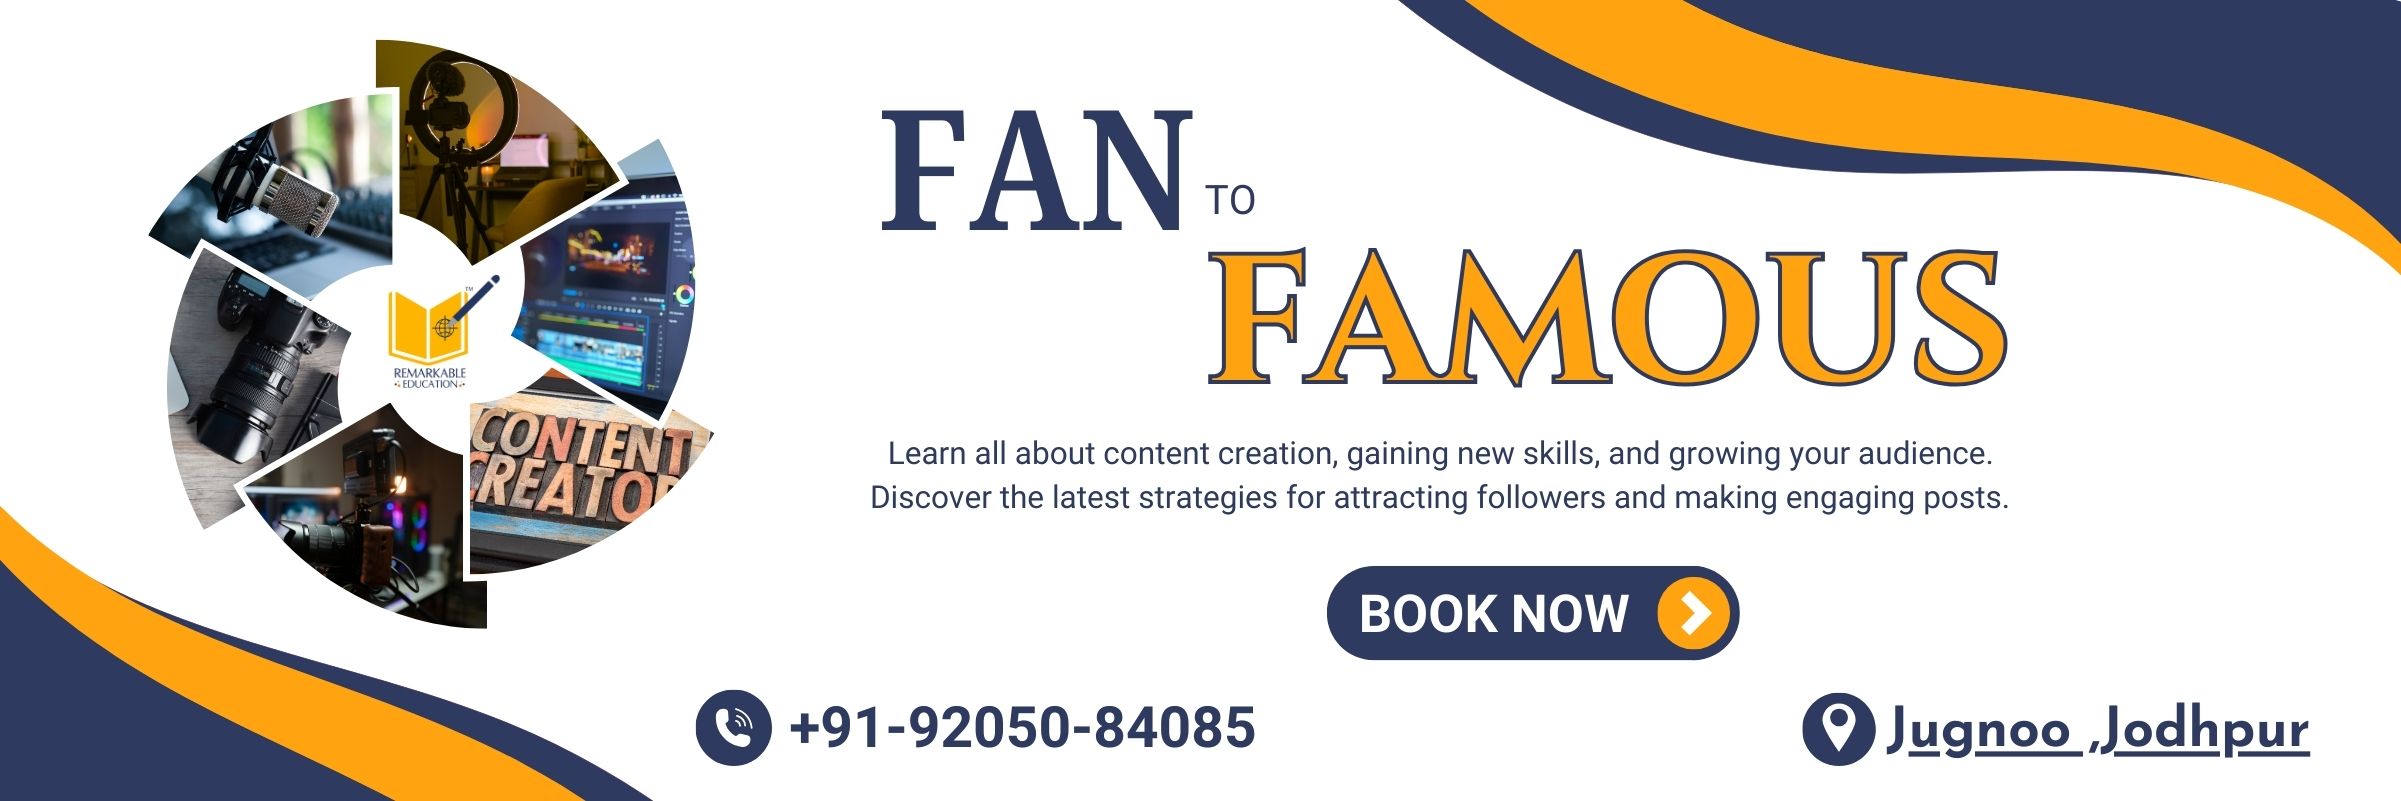 Fan to famous-a social media workshop